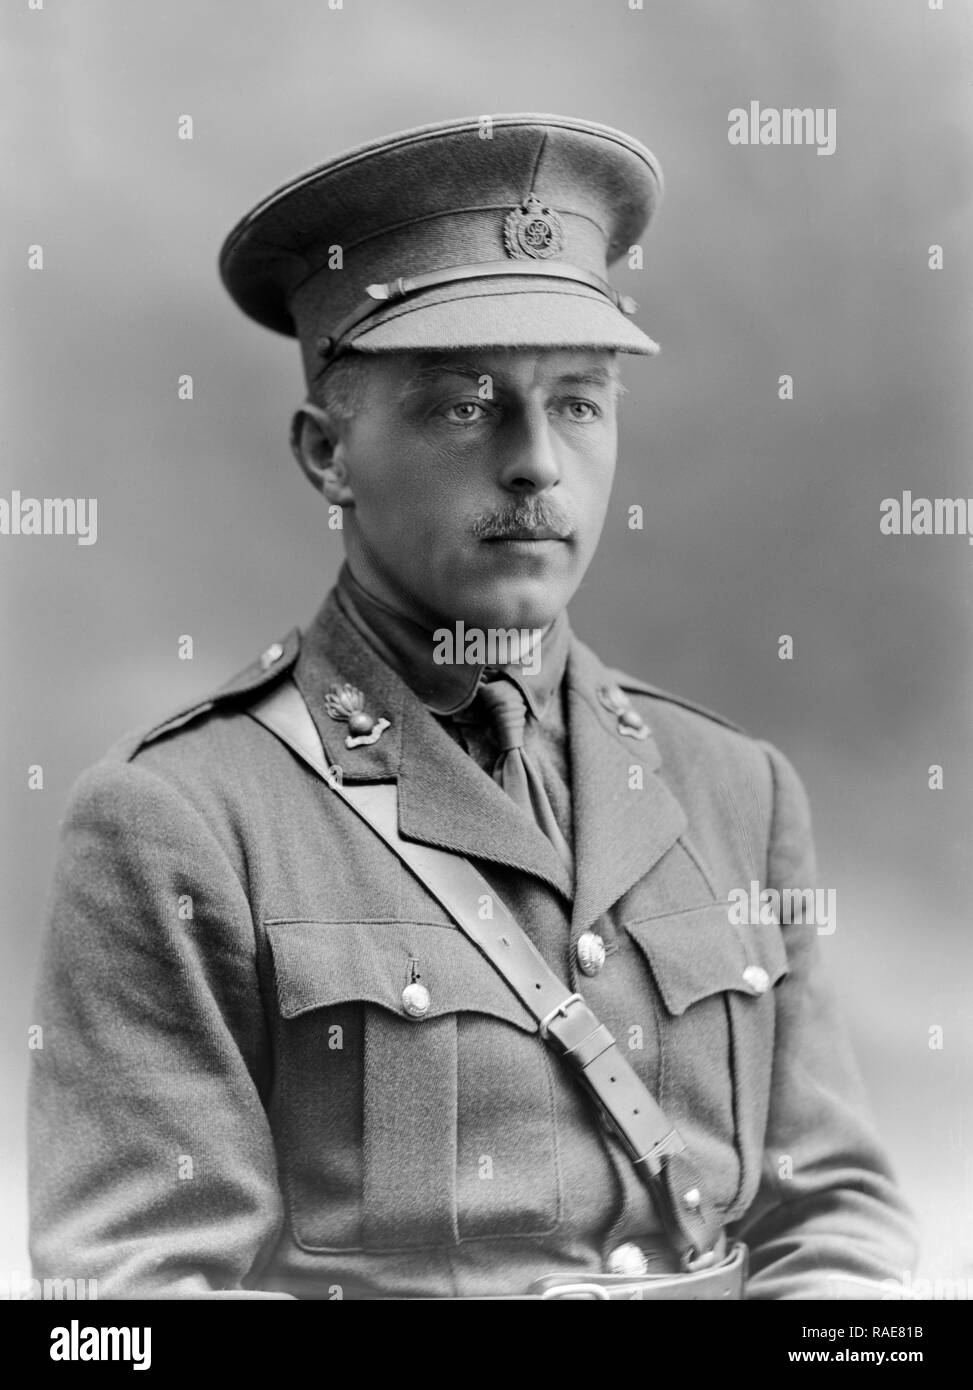 Foto am 1. April 1915 getroffen. Lieutenant R.N. Aylward der Royal Engineers der Britischen Armee. In der berühmten Bassano Fotografie Studio in London getroffen. Ersten Weltkrieg Soldat. Stockfoto